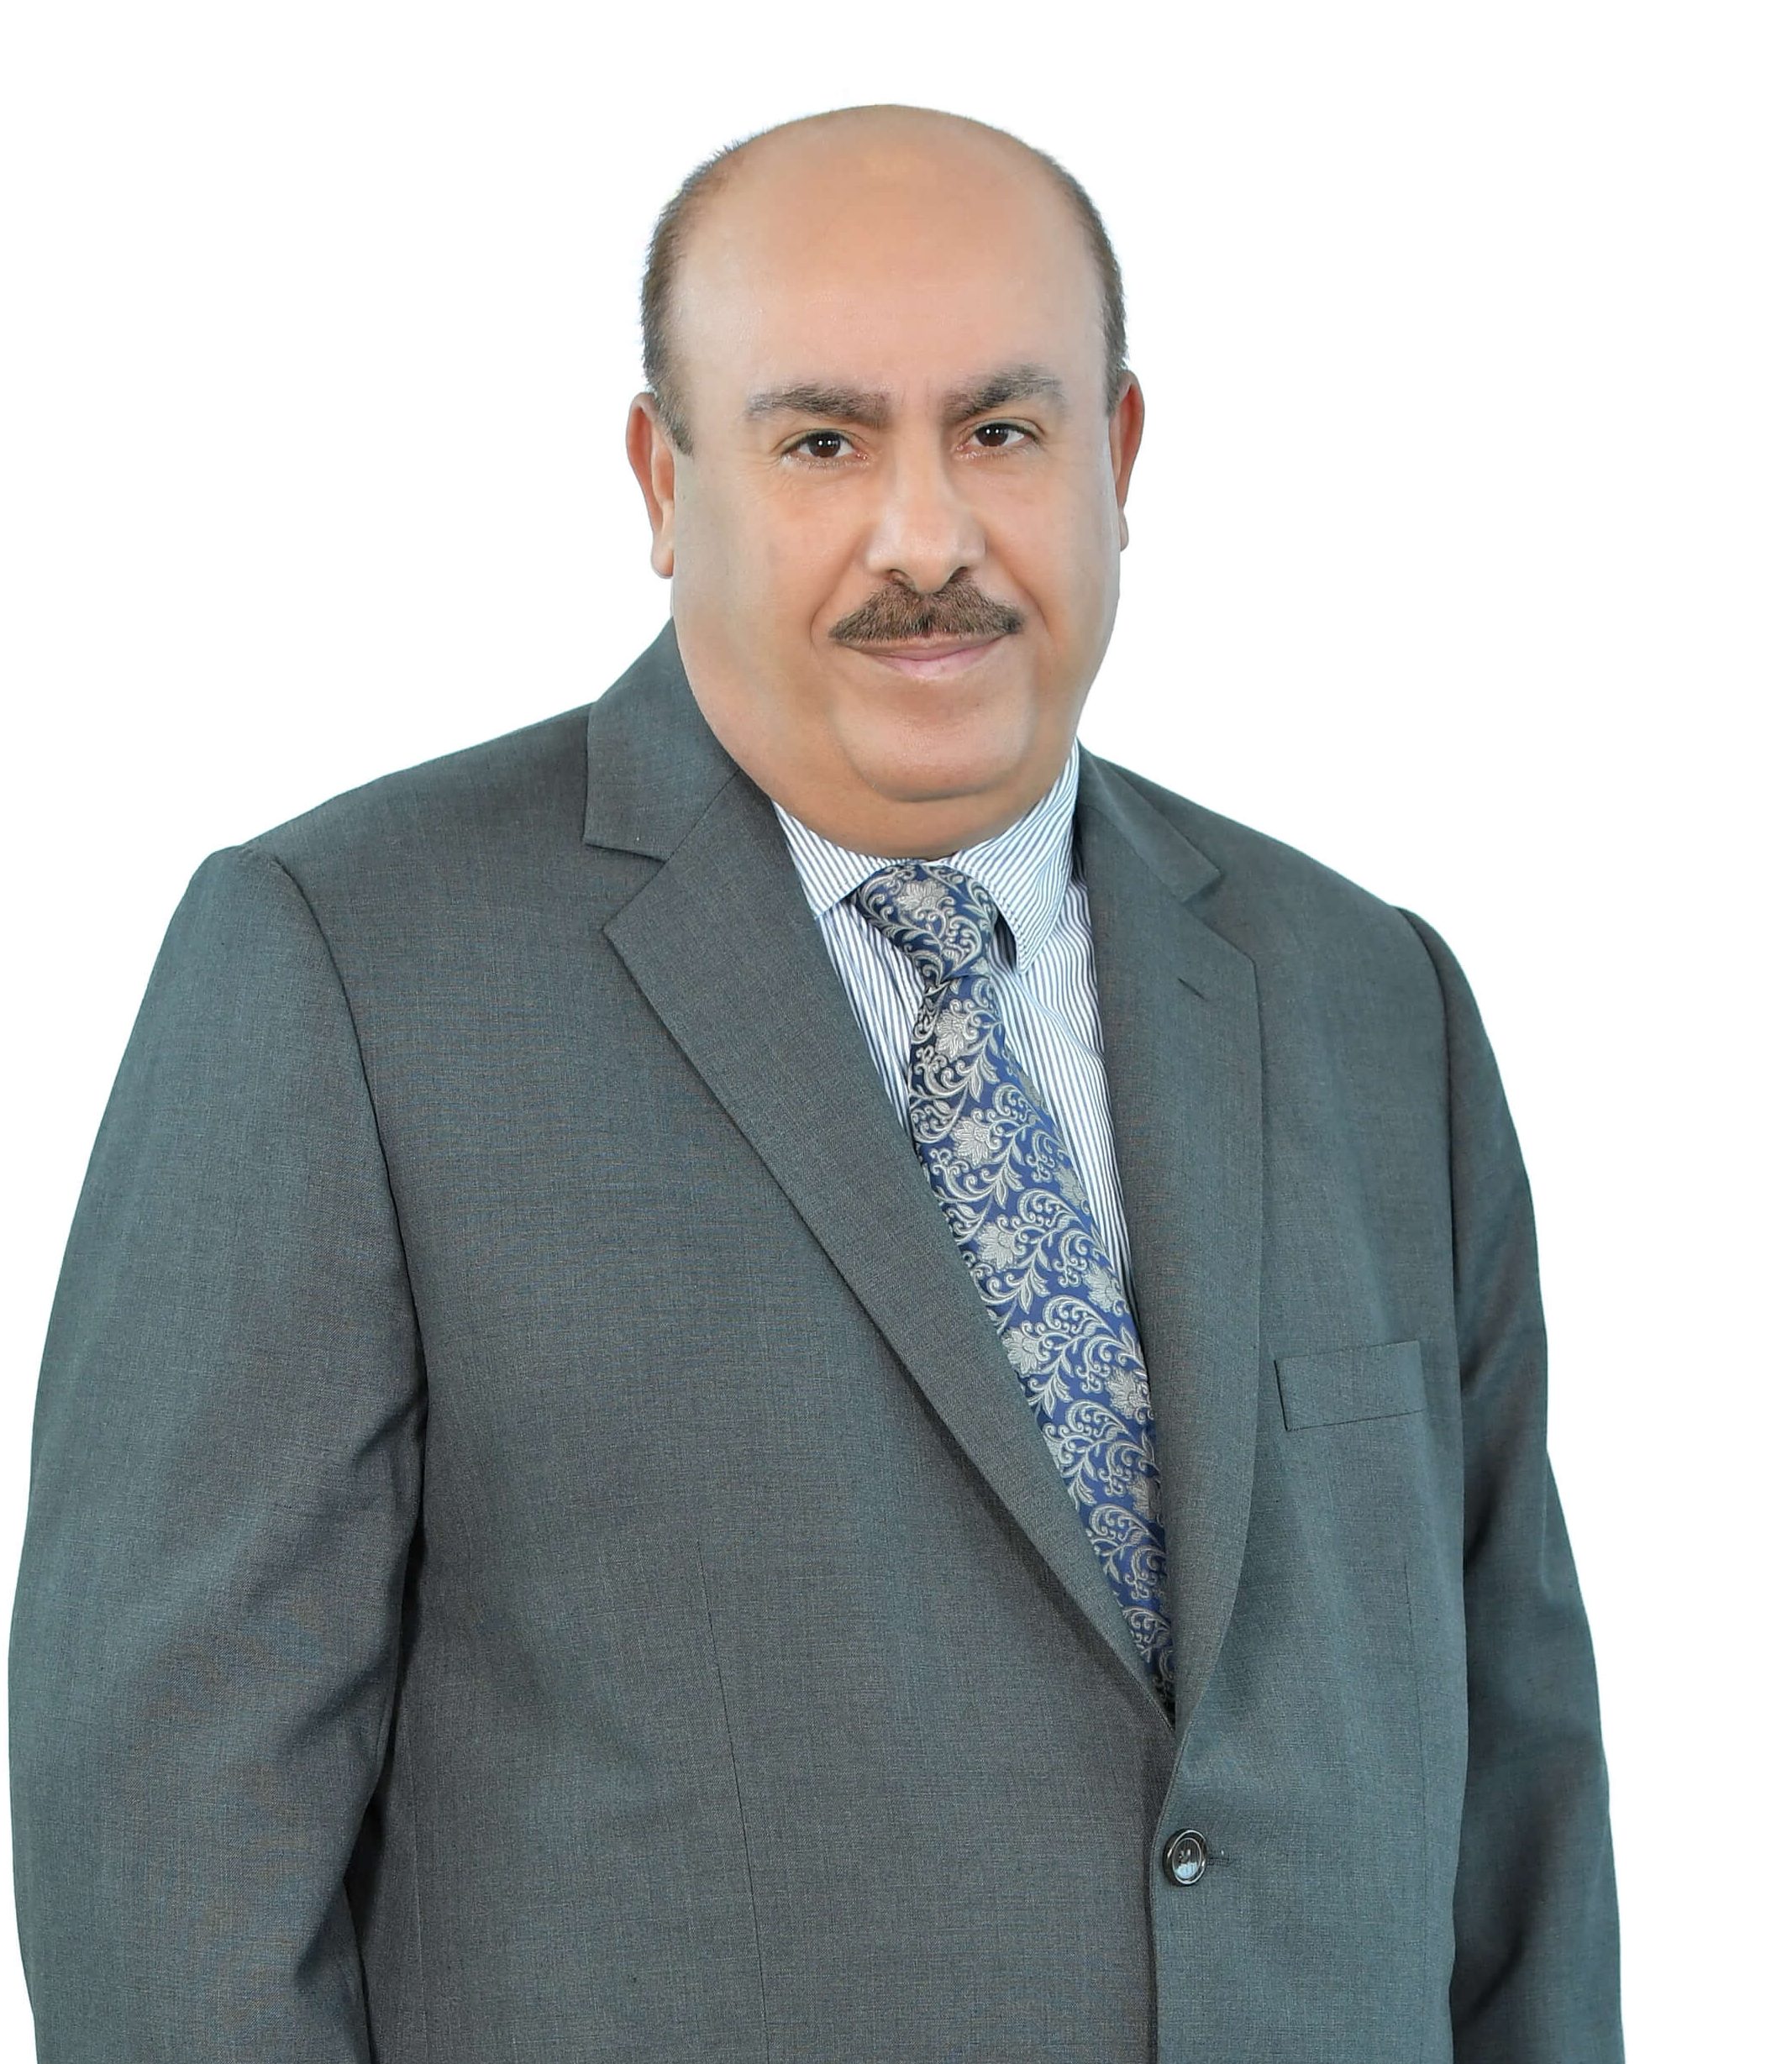 Dr. Ahmad Mousa Thabet